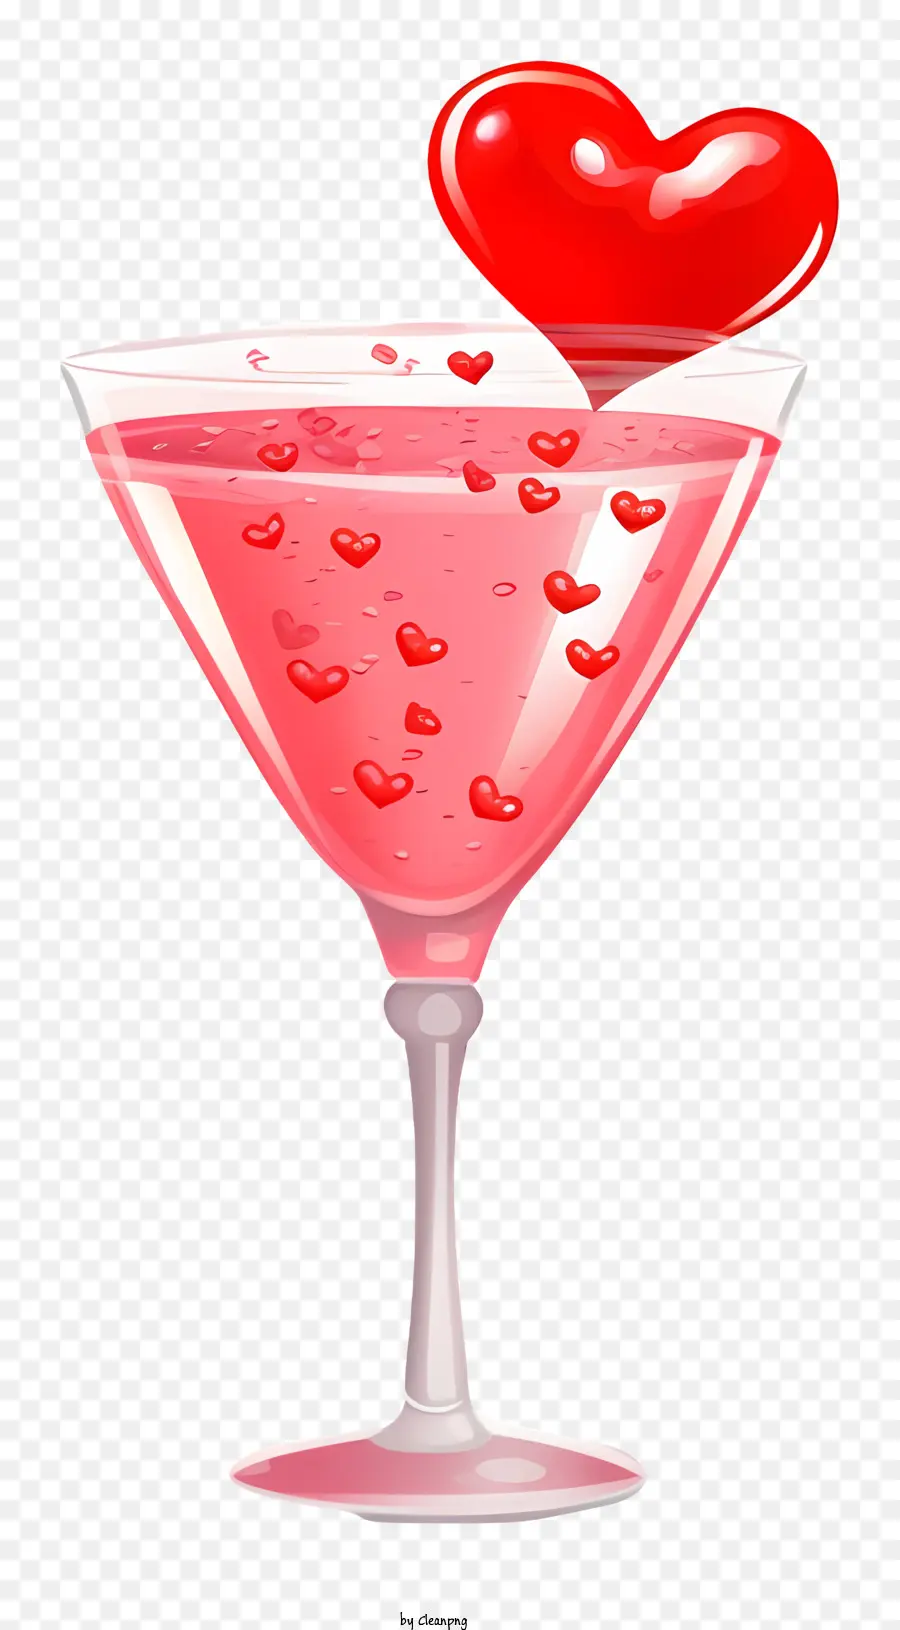 thực tế ngày lễ tình nhân cocktail trái tim đỏ cocktail cocktail cocktail thủy tinh sủi bọt - Cocktail hình trái tim đỏ được đổ vào ly